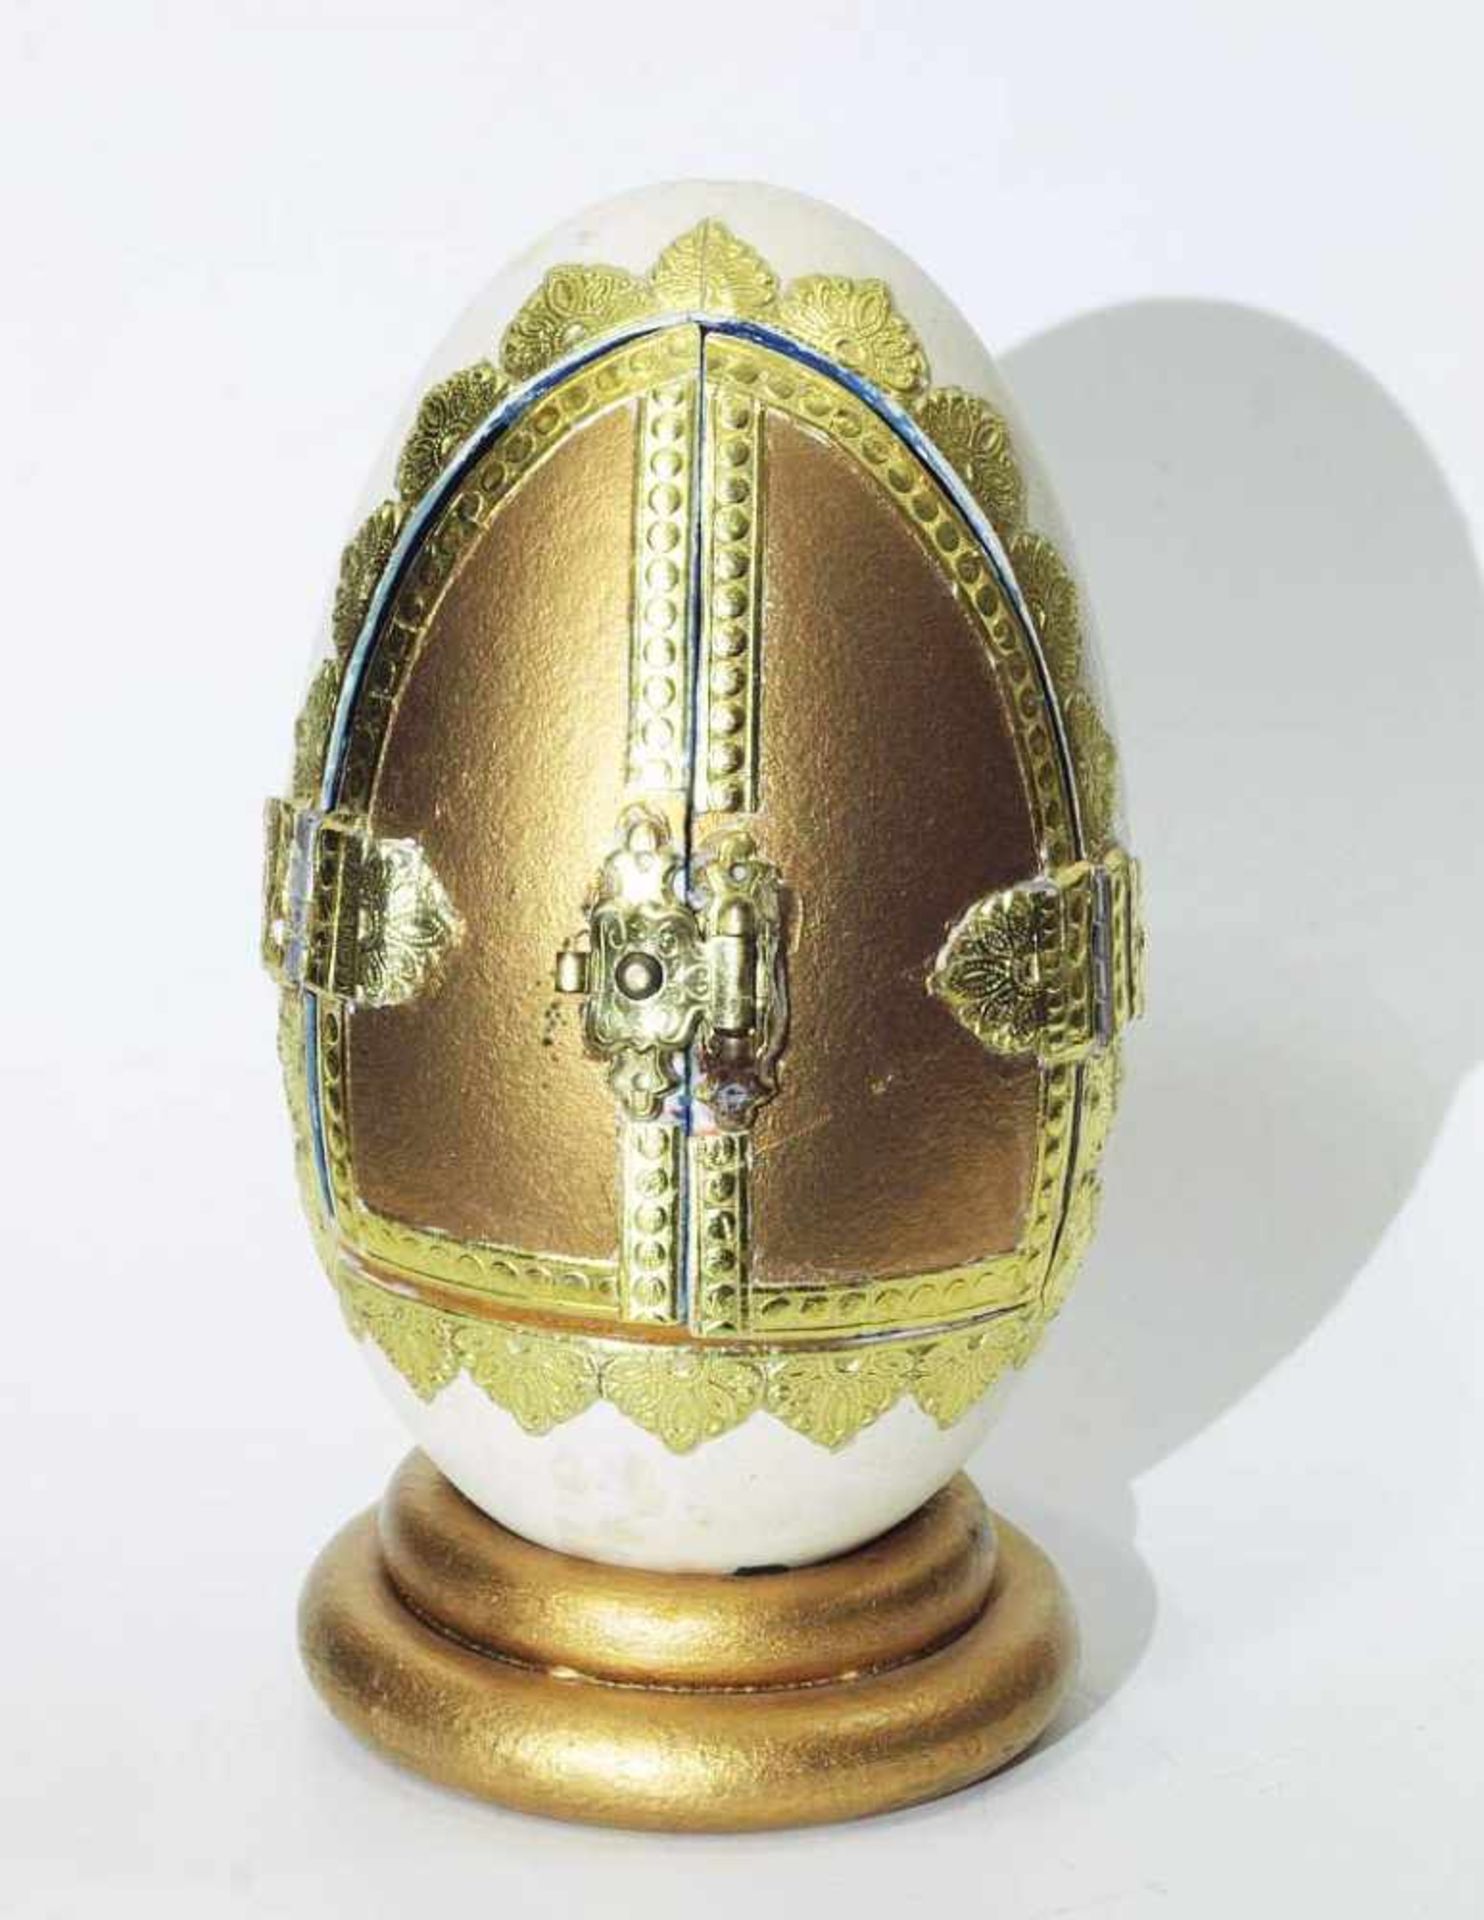 Krippenszene in Ei Krippenszene in Ei. 20. Jahrhundert. Vermutlich Gänseei als Krippe, dekoriert mit - Bild 4 aus 6